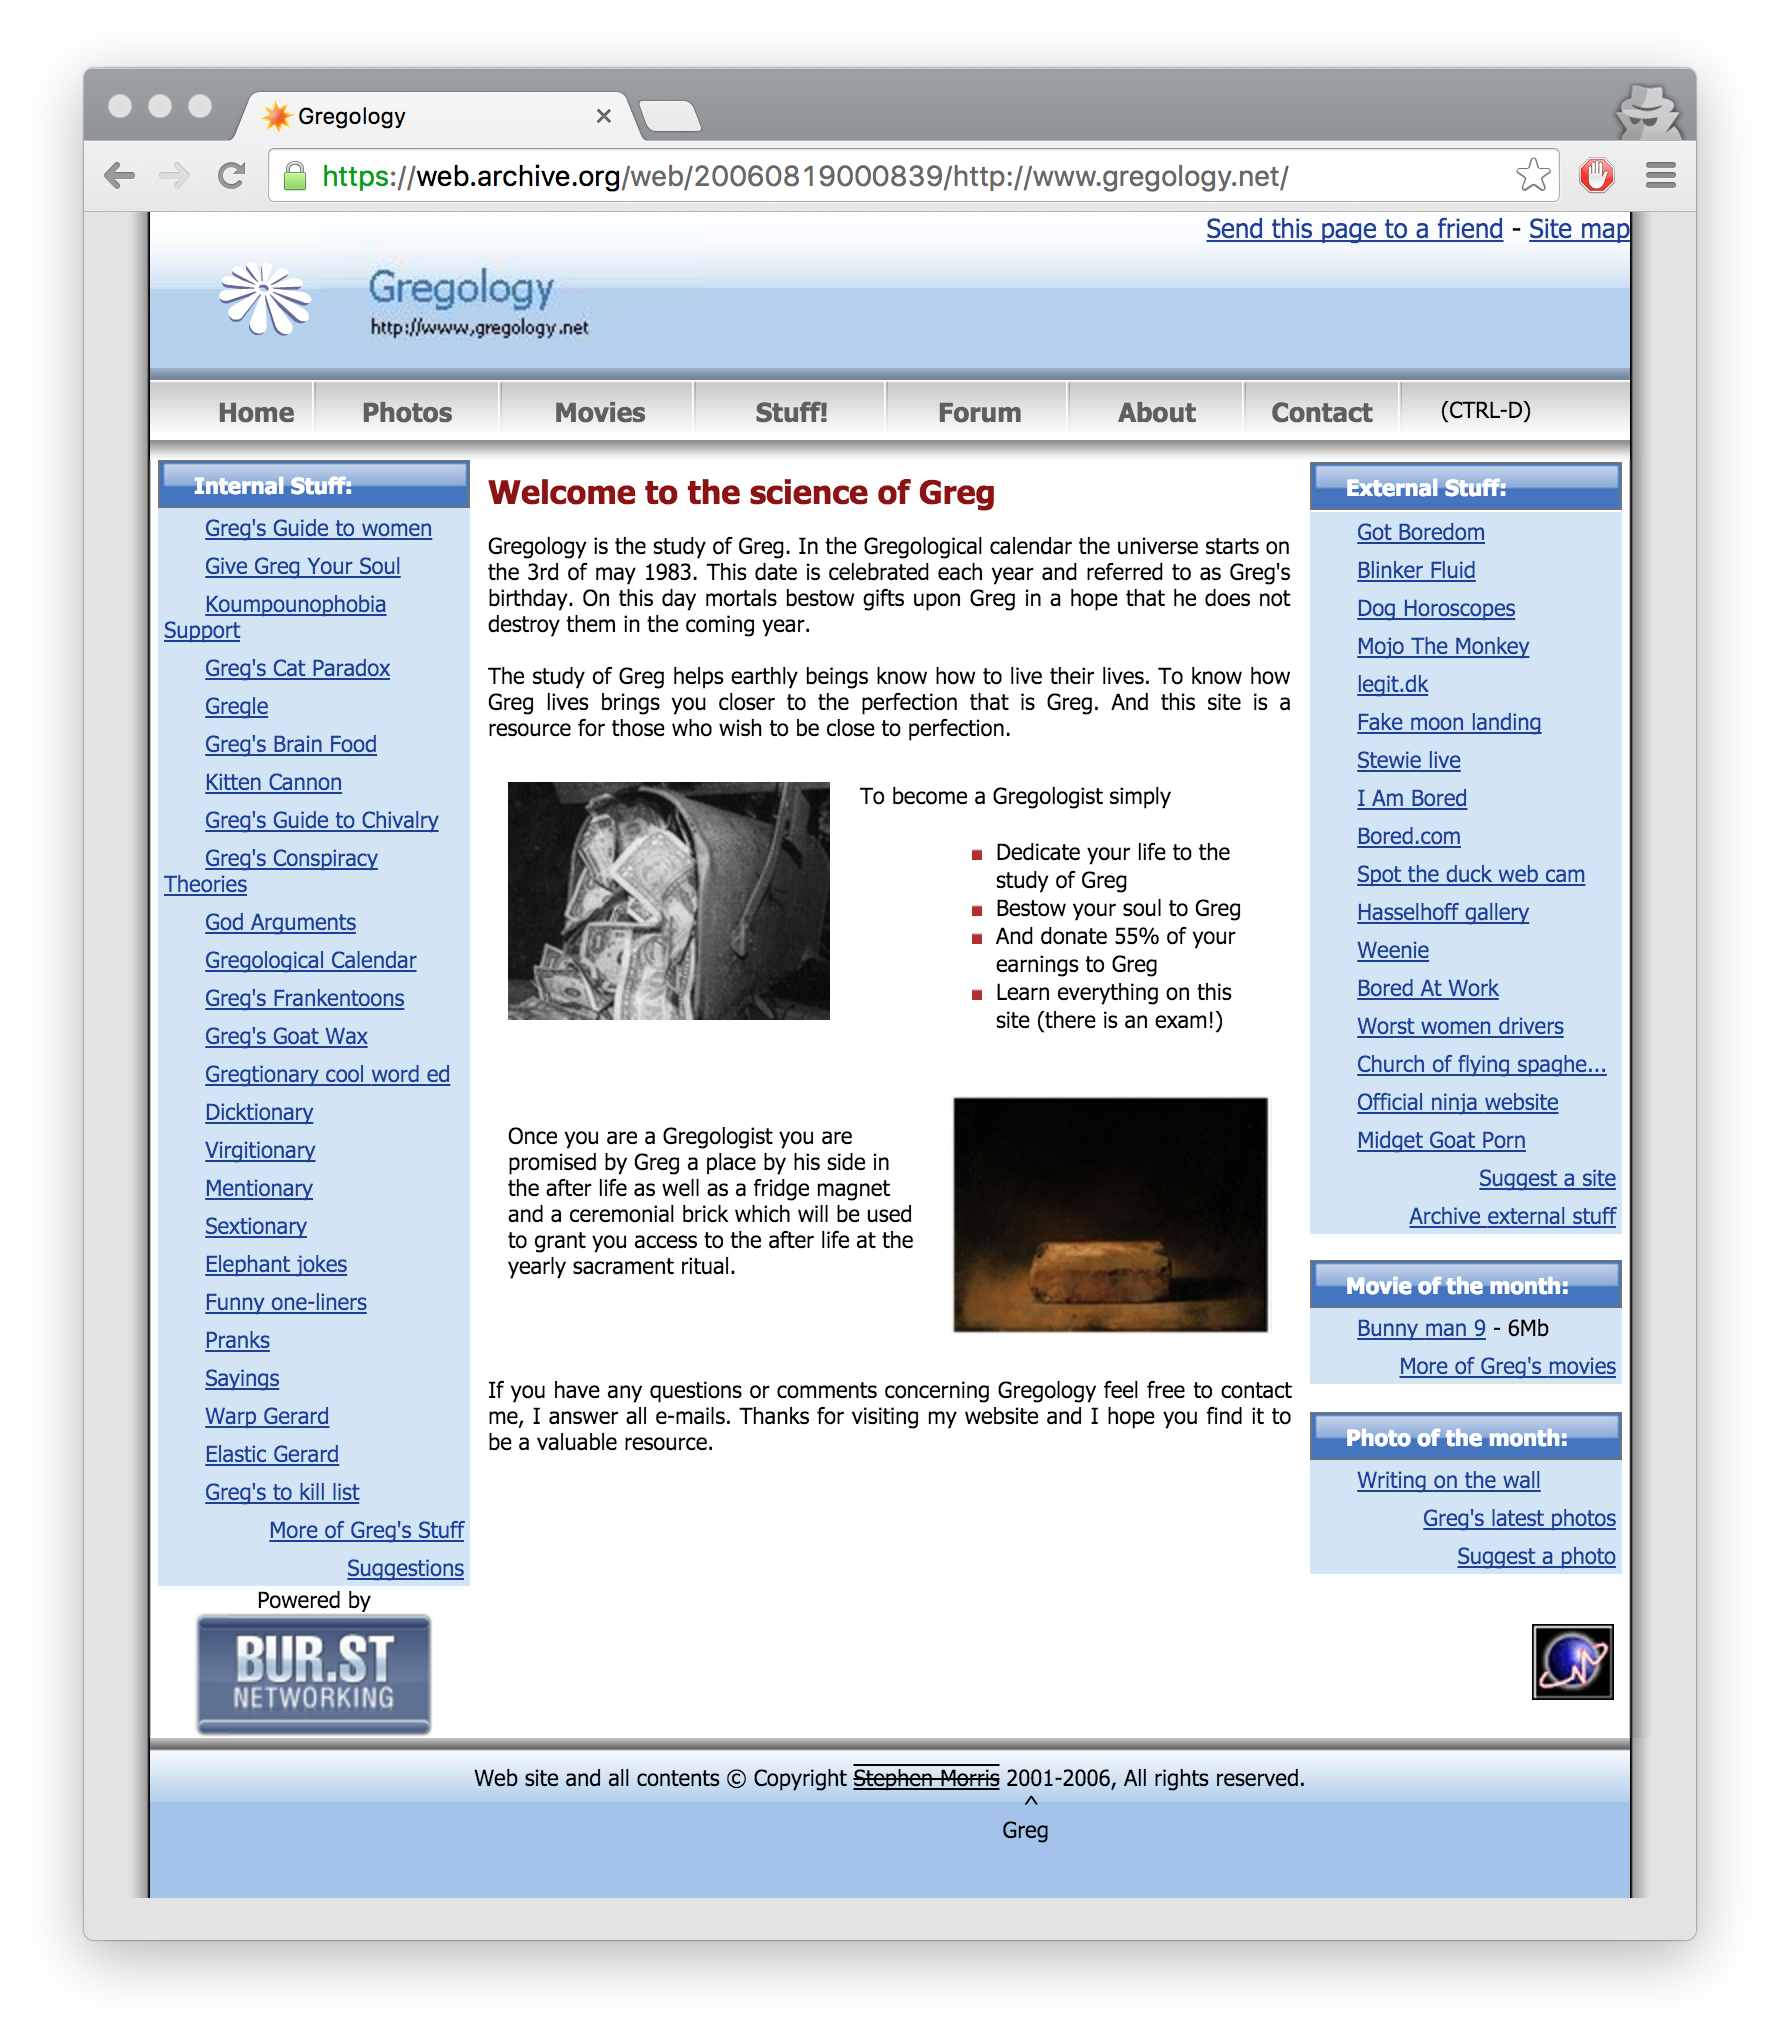 Gregology.net 2005 version